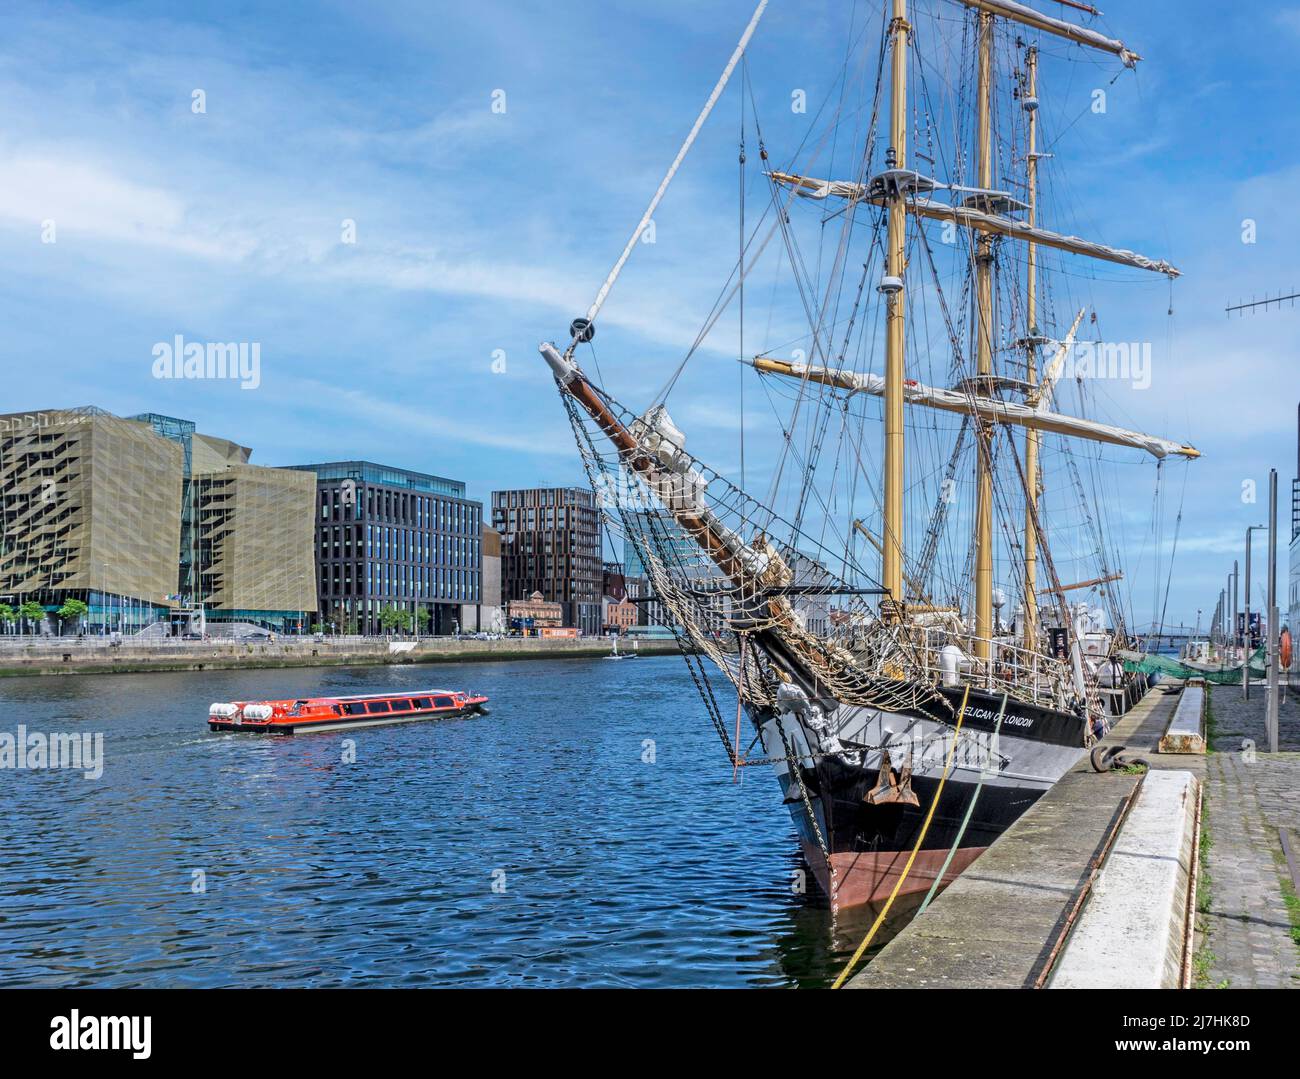 Das große Schiff Pelican von London, das hier vor den modernen Bürogebäuden der Dublin Docklands abgebildet ist, während eine Besichtigungstour vorbeiführt. Stockfoto